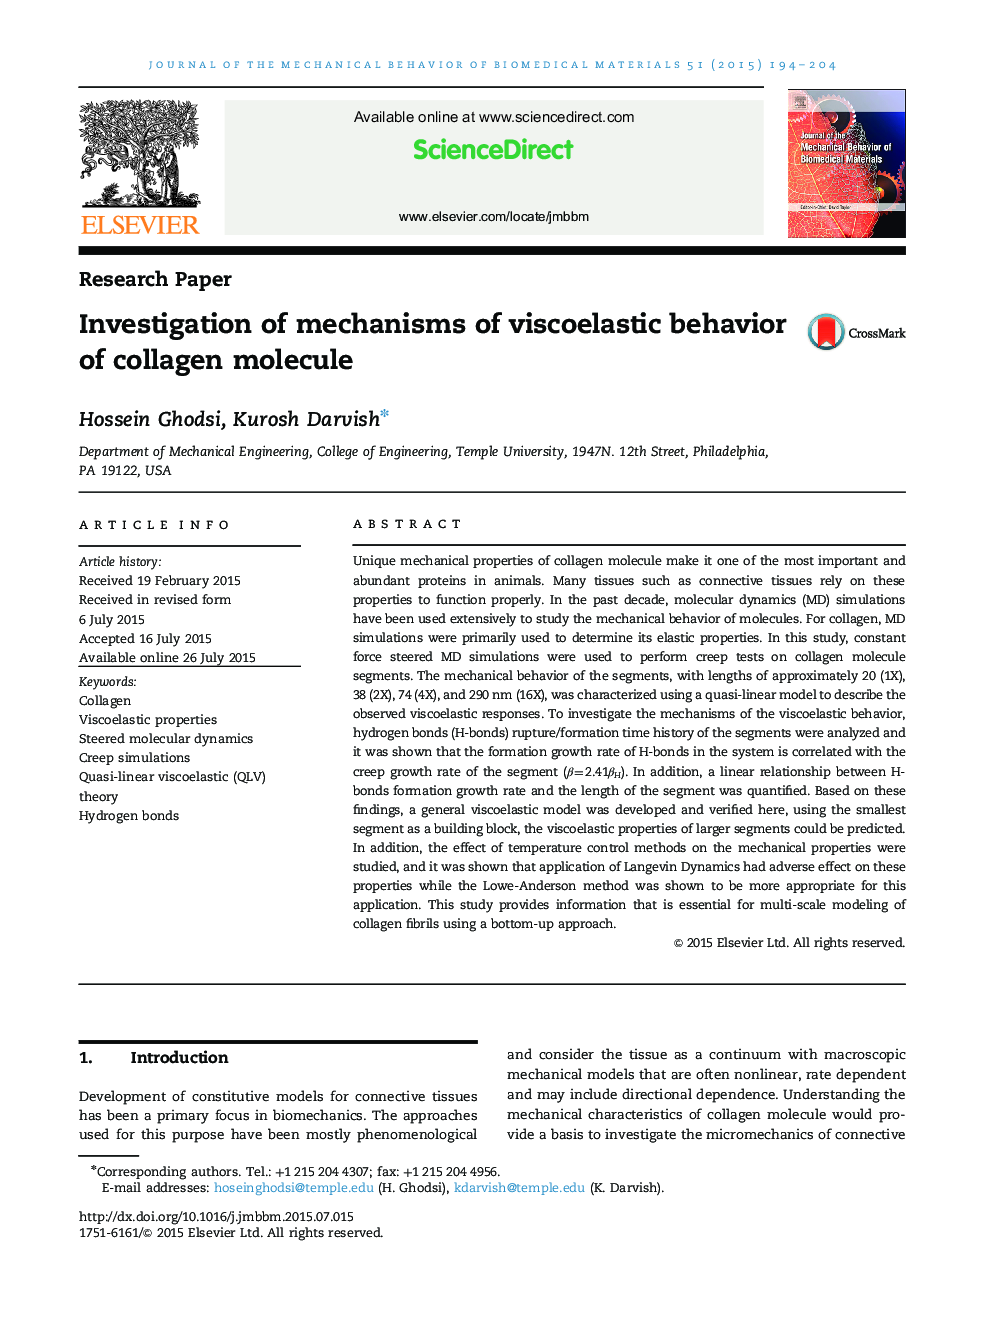 بررسی مکانیزم های رفتار ویسکولاستیک مولکول کلاژن 